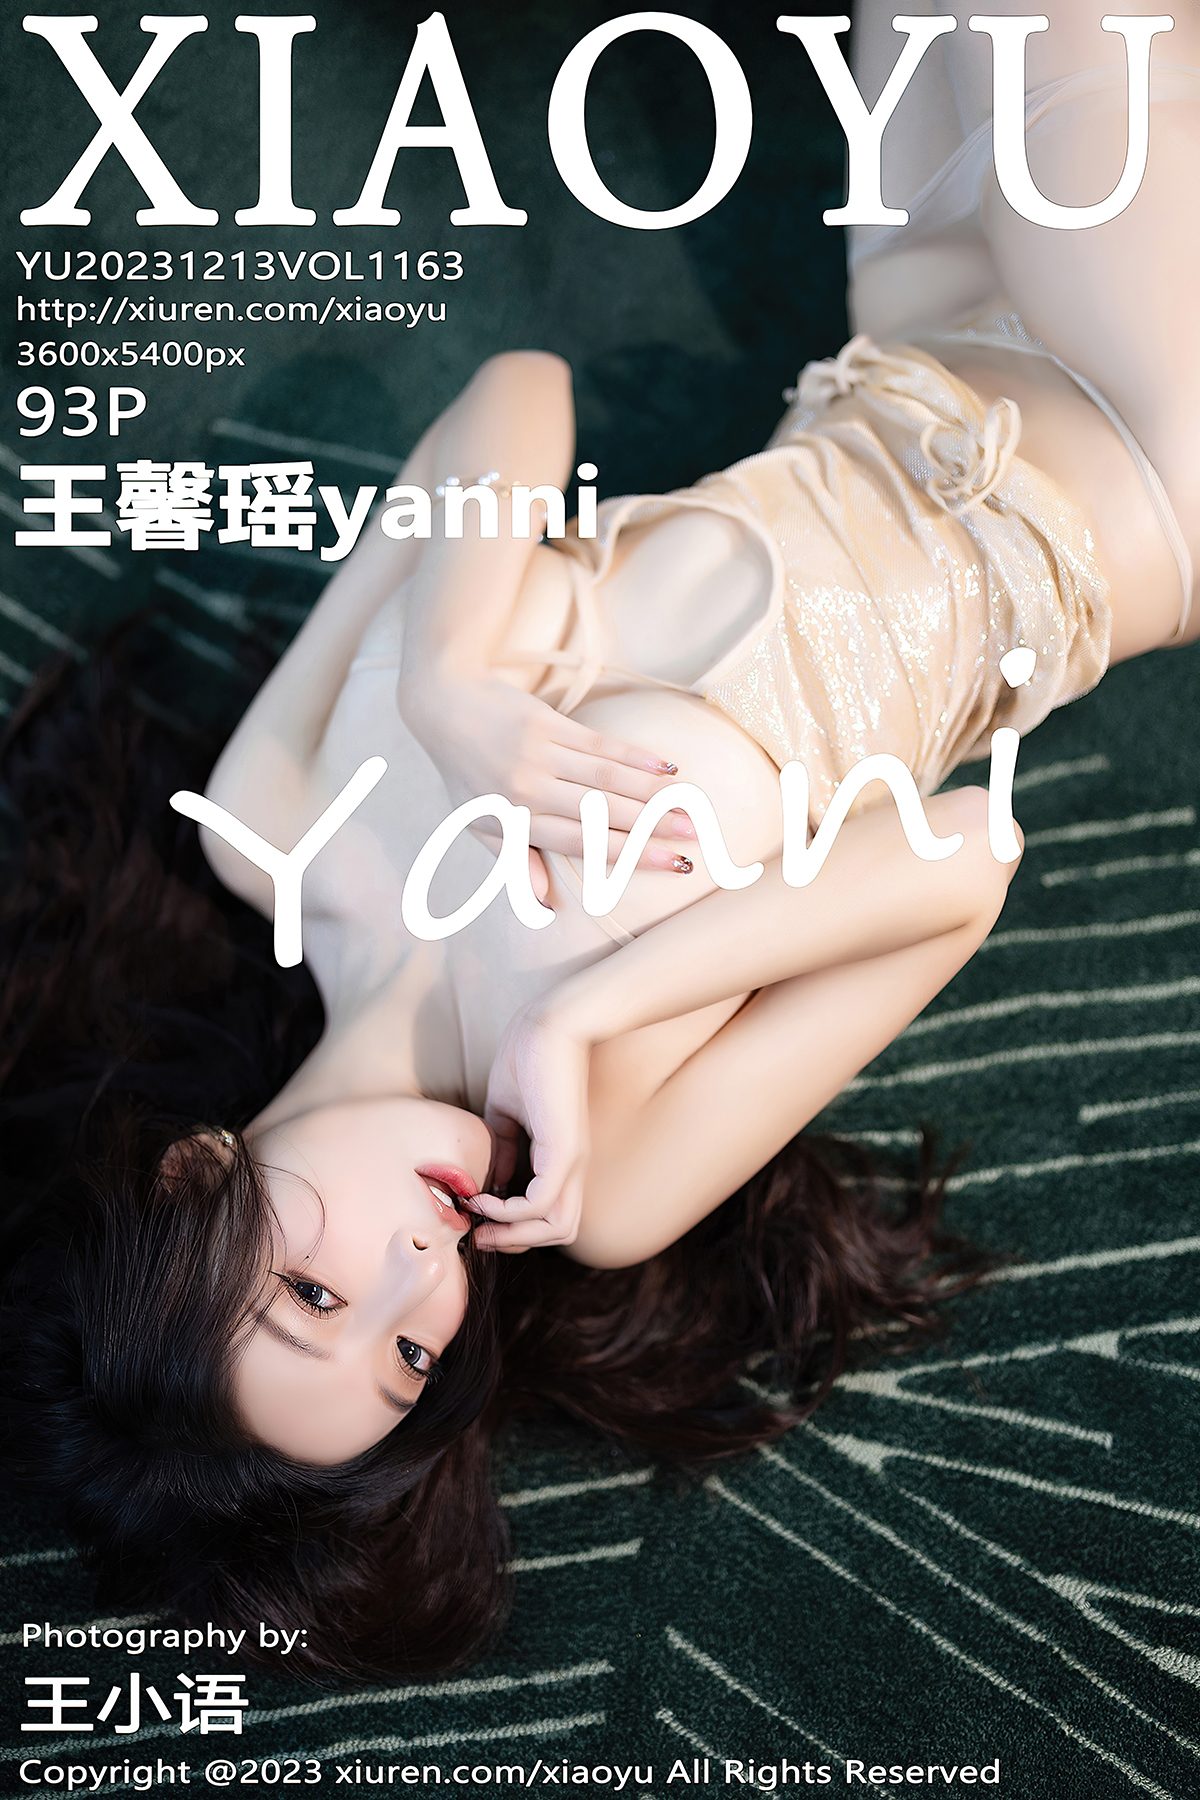 XiaoYu语画界 Vol 1163 Wang Xin Yao Yanni 0032 1864417399.jpg